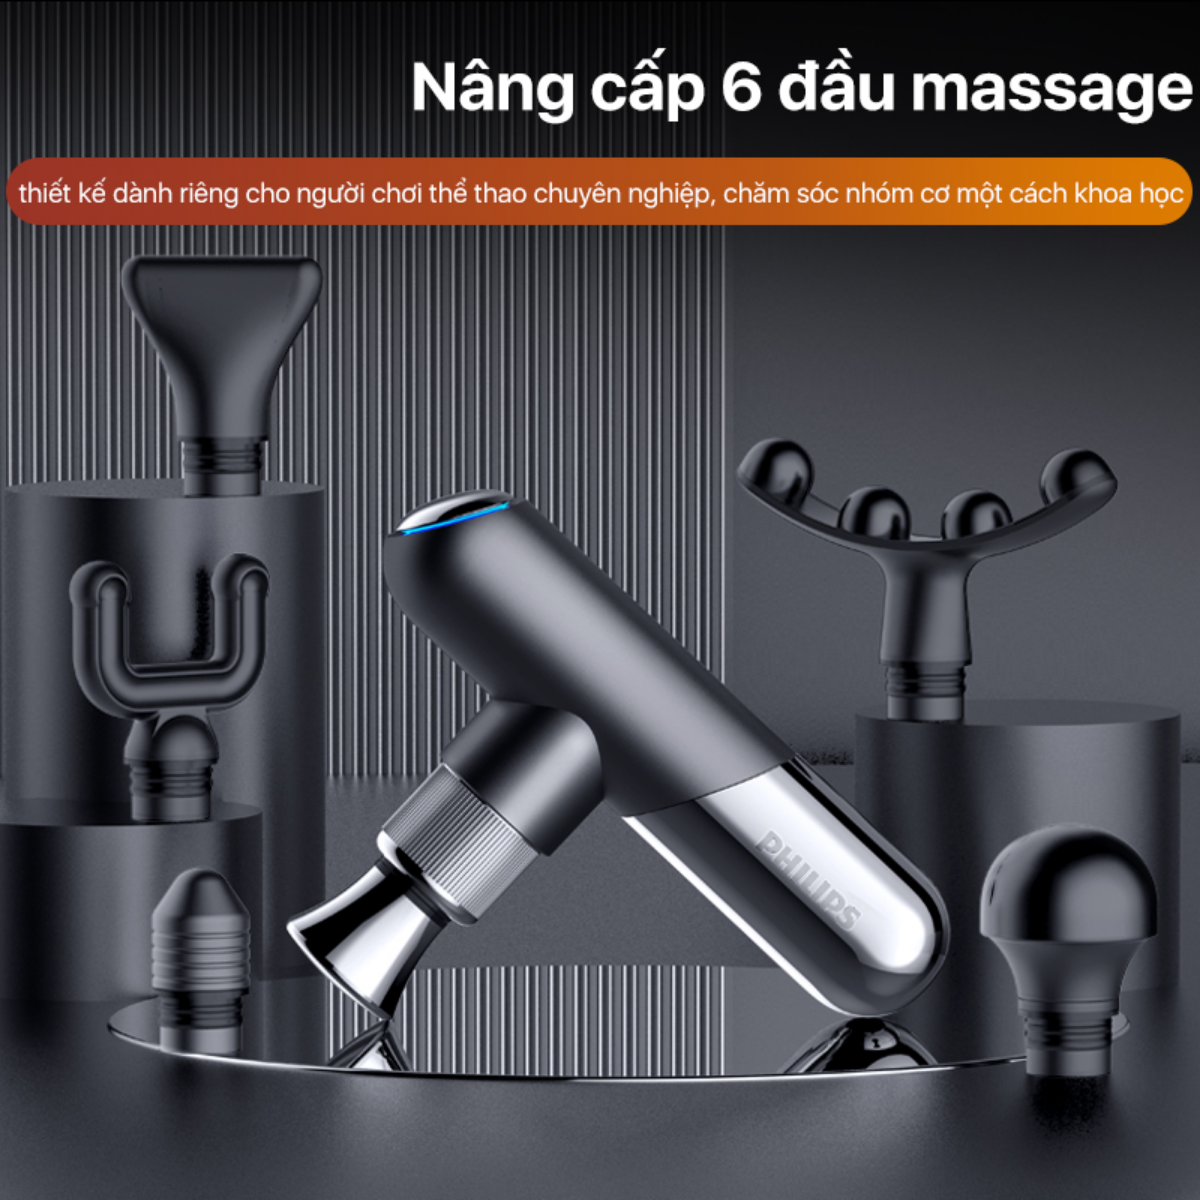 Máy massage cầm tay mini PHILIPS PPM7323 nâng cấp 6 đầu massage